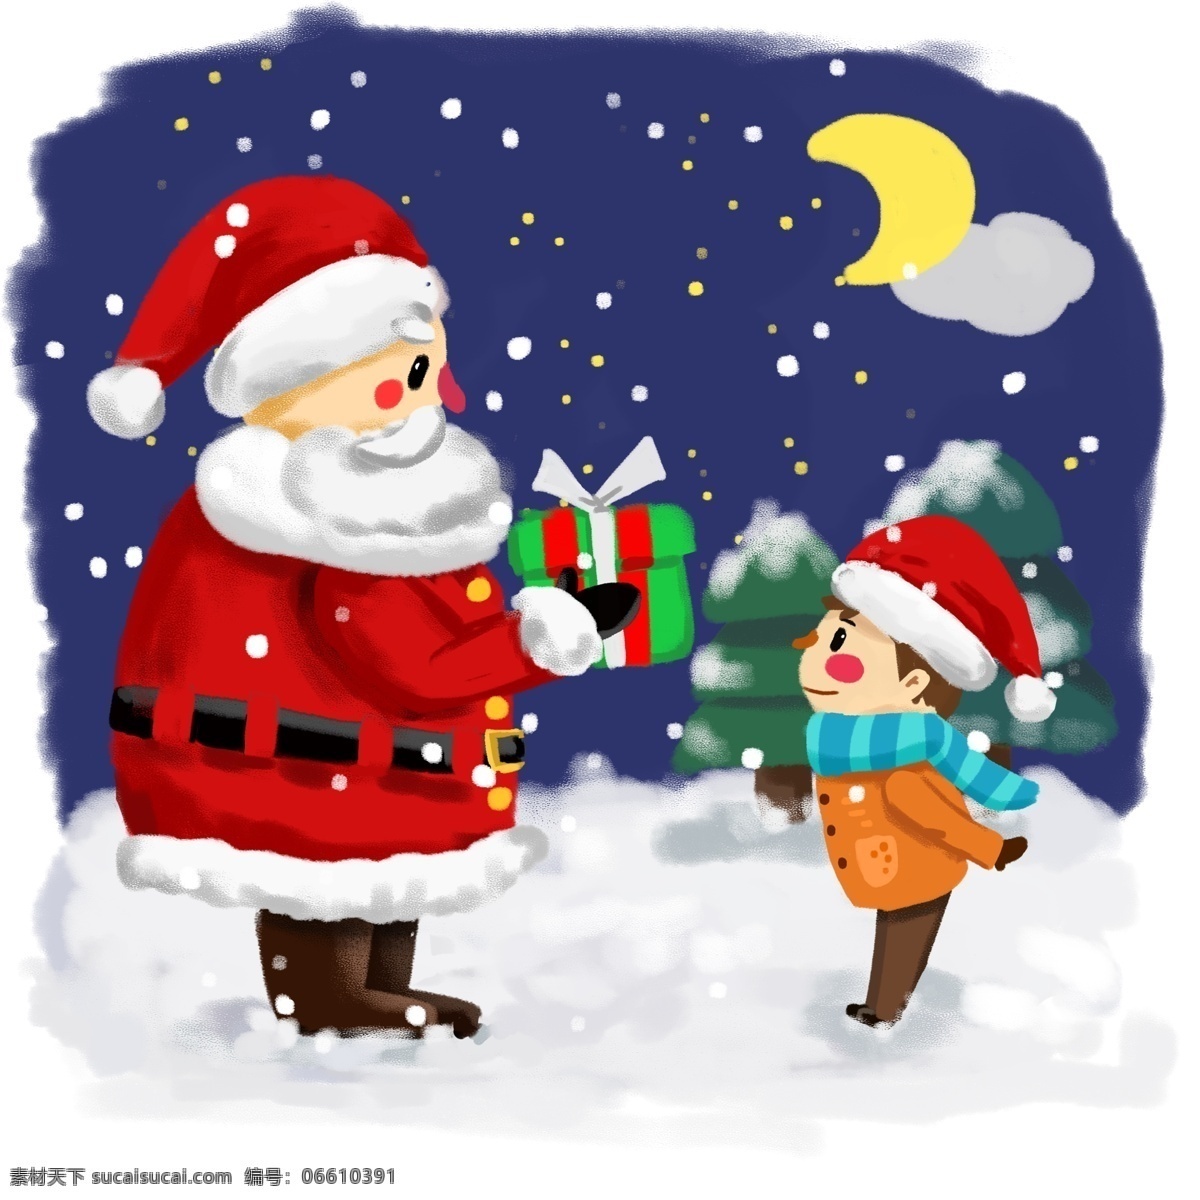 卡通 冬季 圣诞节 圣诞老人 送 小朋友 礼物 圣诞夜 圣诞礼物 送礼物 送礼 物 卡通手绘 夜晚 月亮 雪花 雪地 西方节日